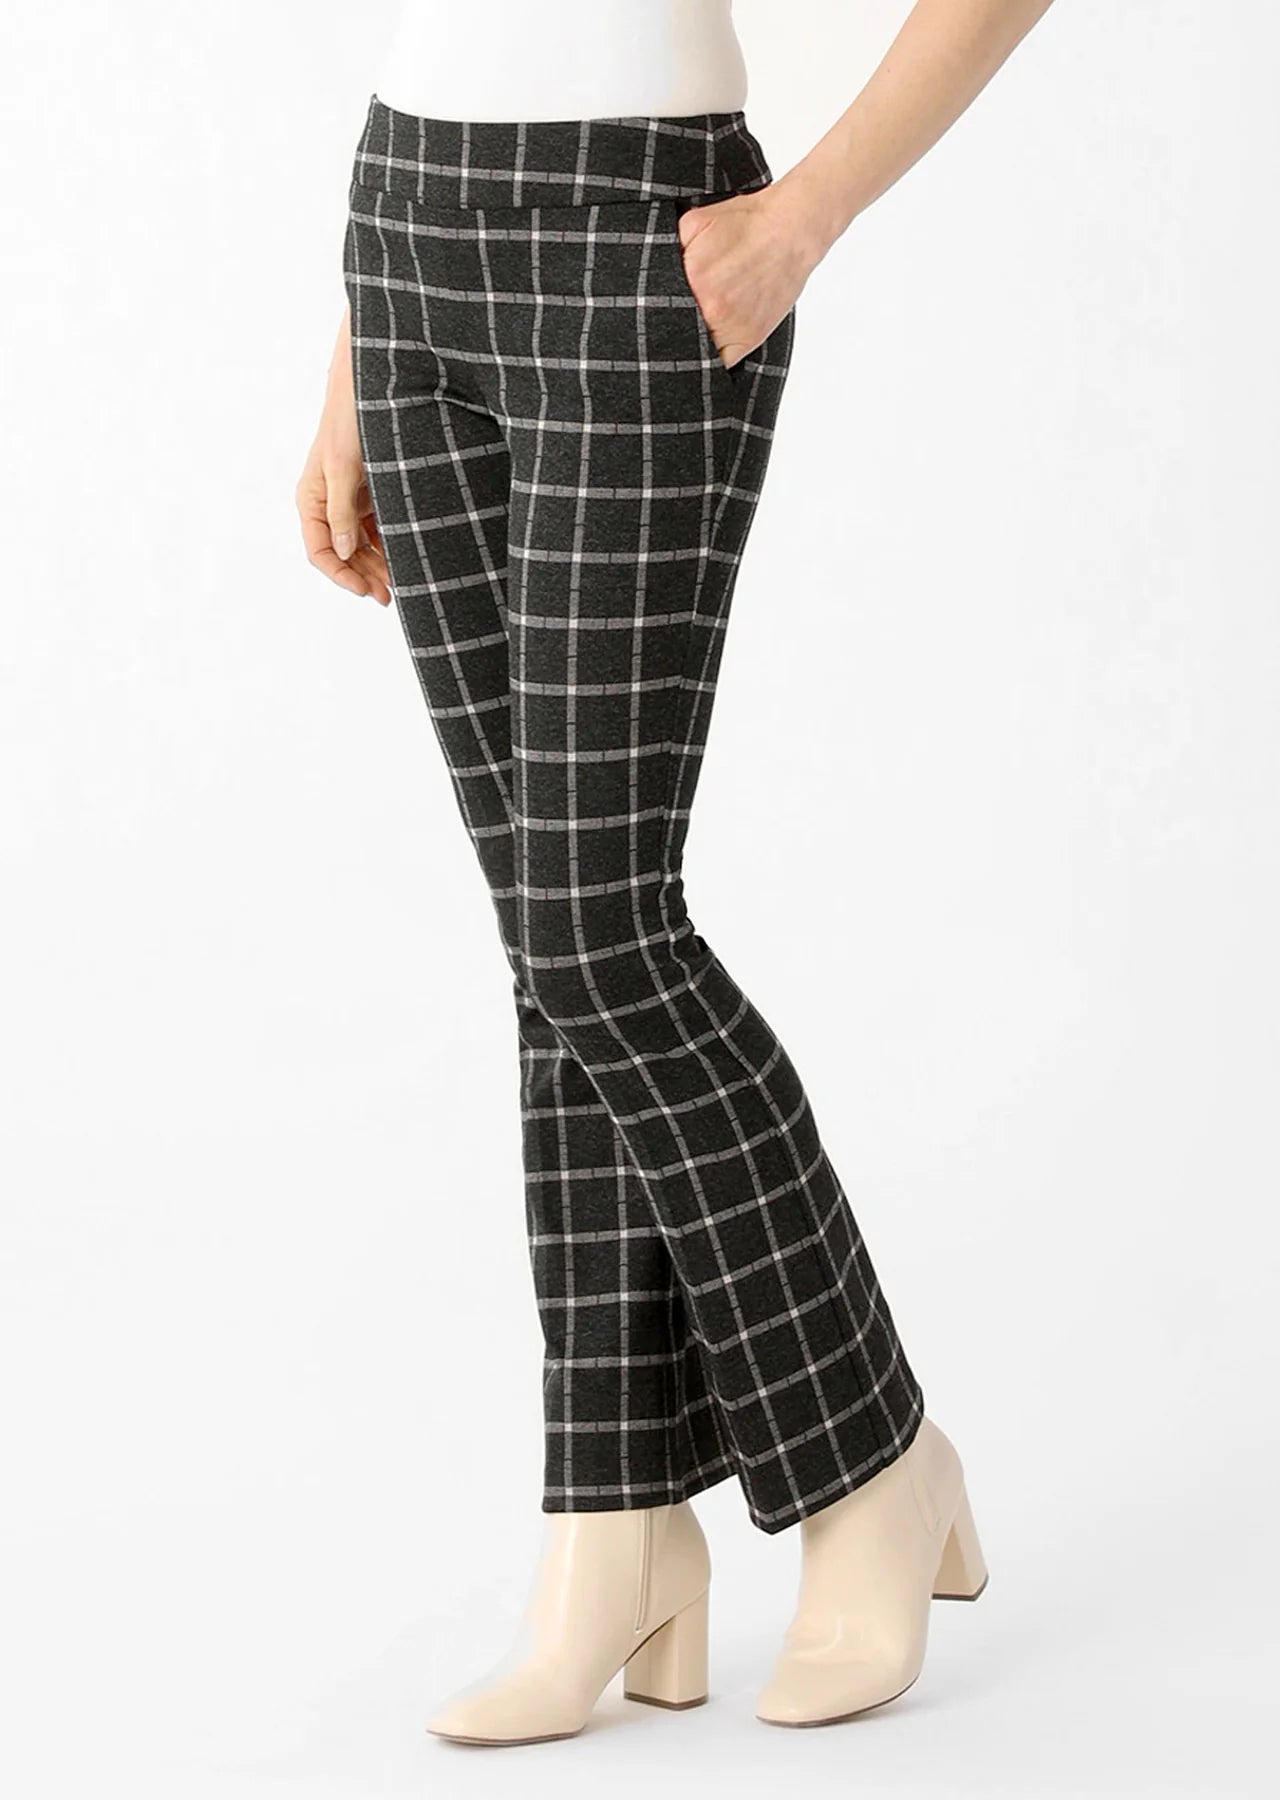 Lisette Bradford Plaid Fabric 31" Mini-Flare Pants